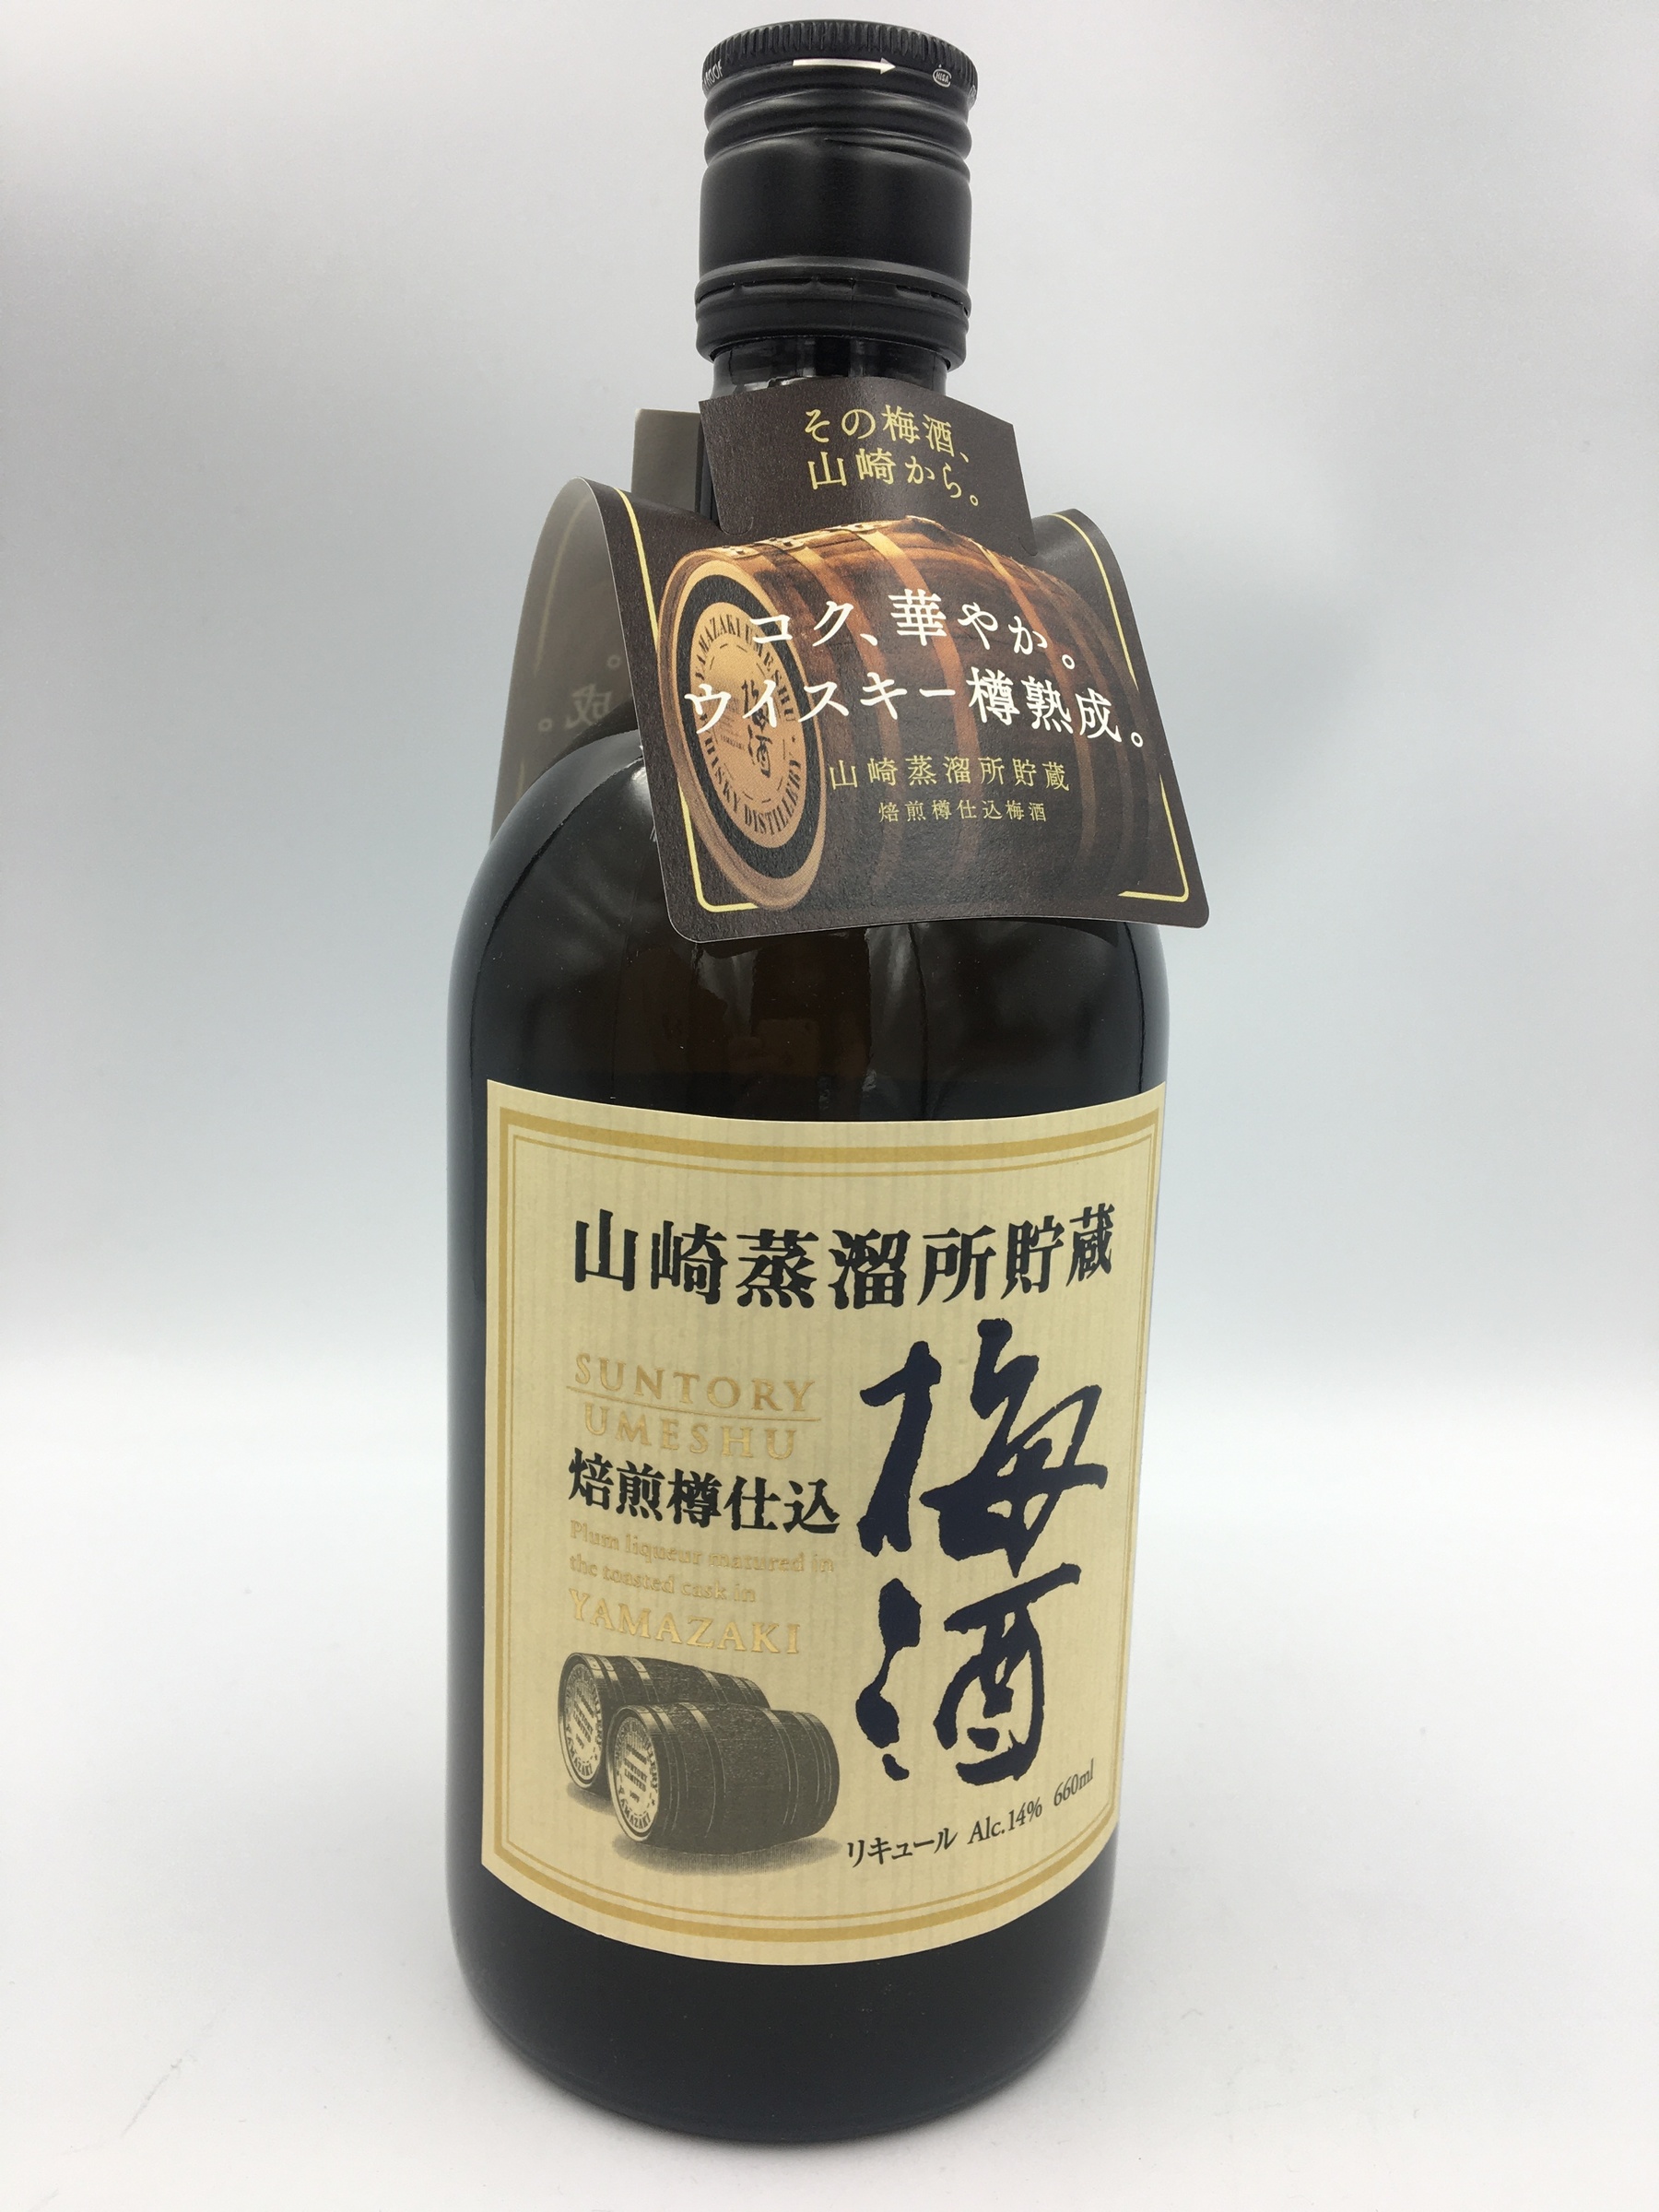 サントリー 山崎蒸溜所貯蔵焙煎樽仕込梅酒 660ml - ウイスキー